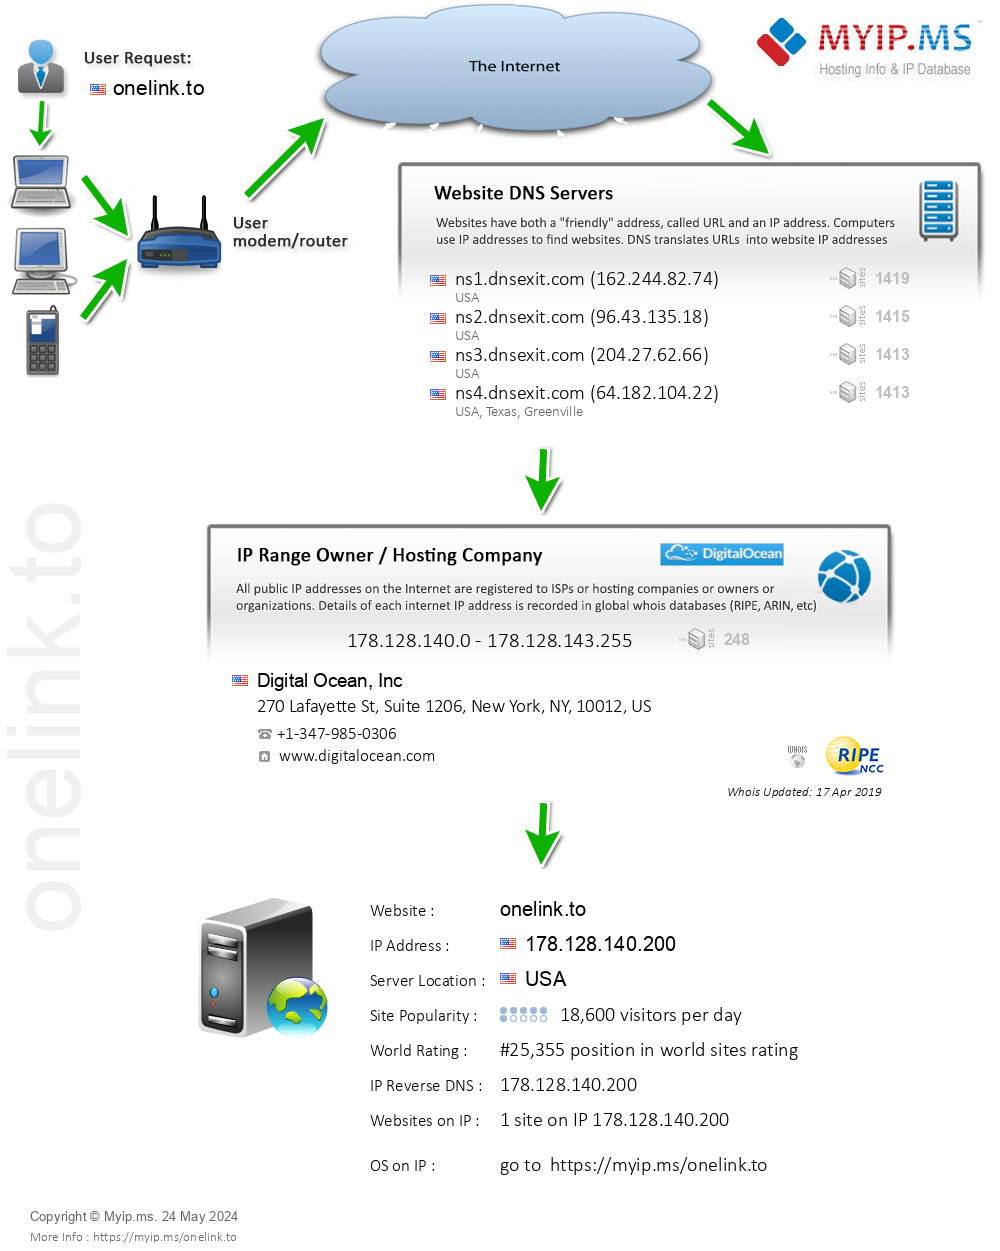 Onelink.to - Website Hosting Visual IP Diagram